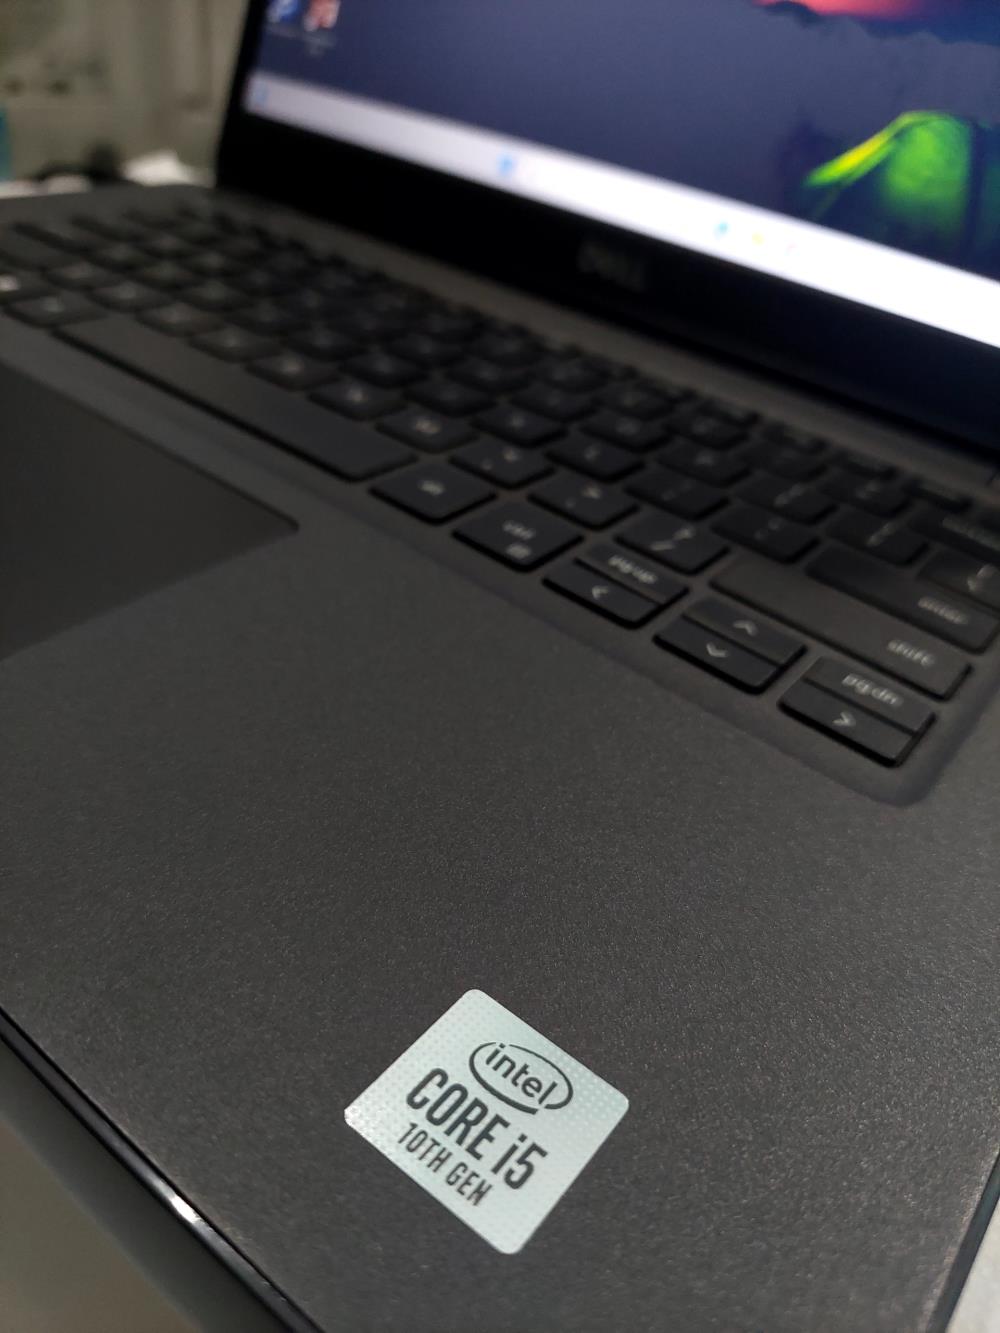 SUPER SALE: Laptop Dell Chính Hãng - Giá Cực Sốc Chỉ Từ 4 Triệu!1434317